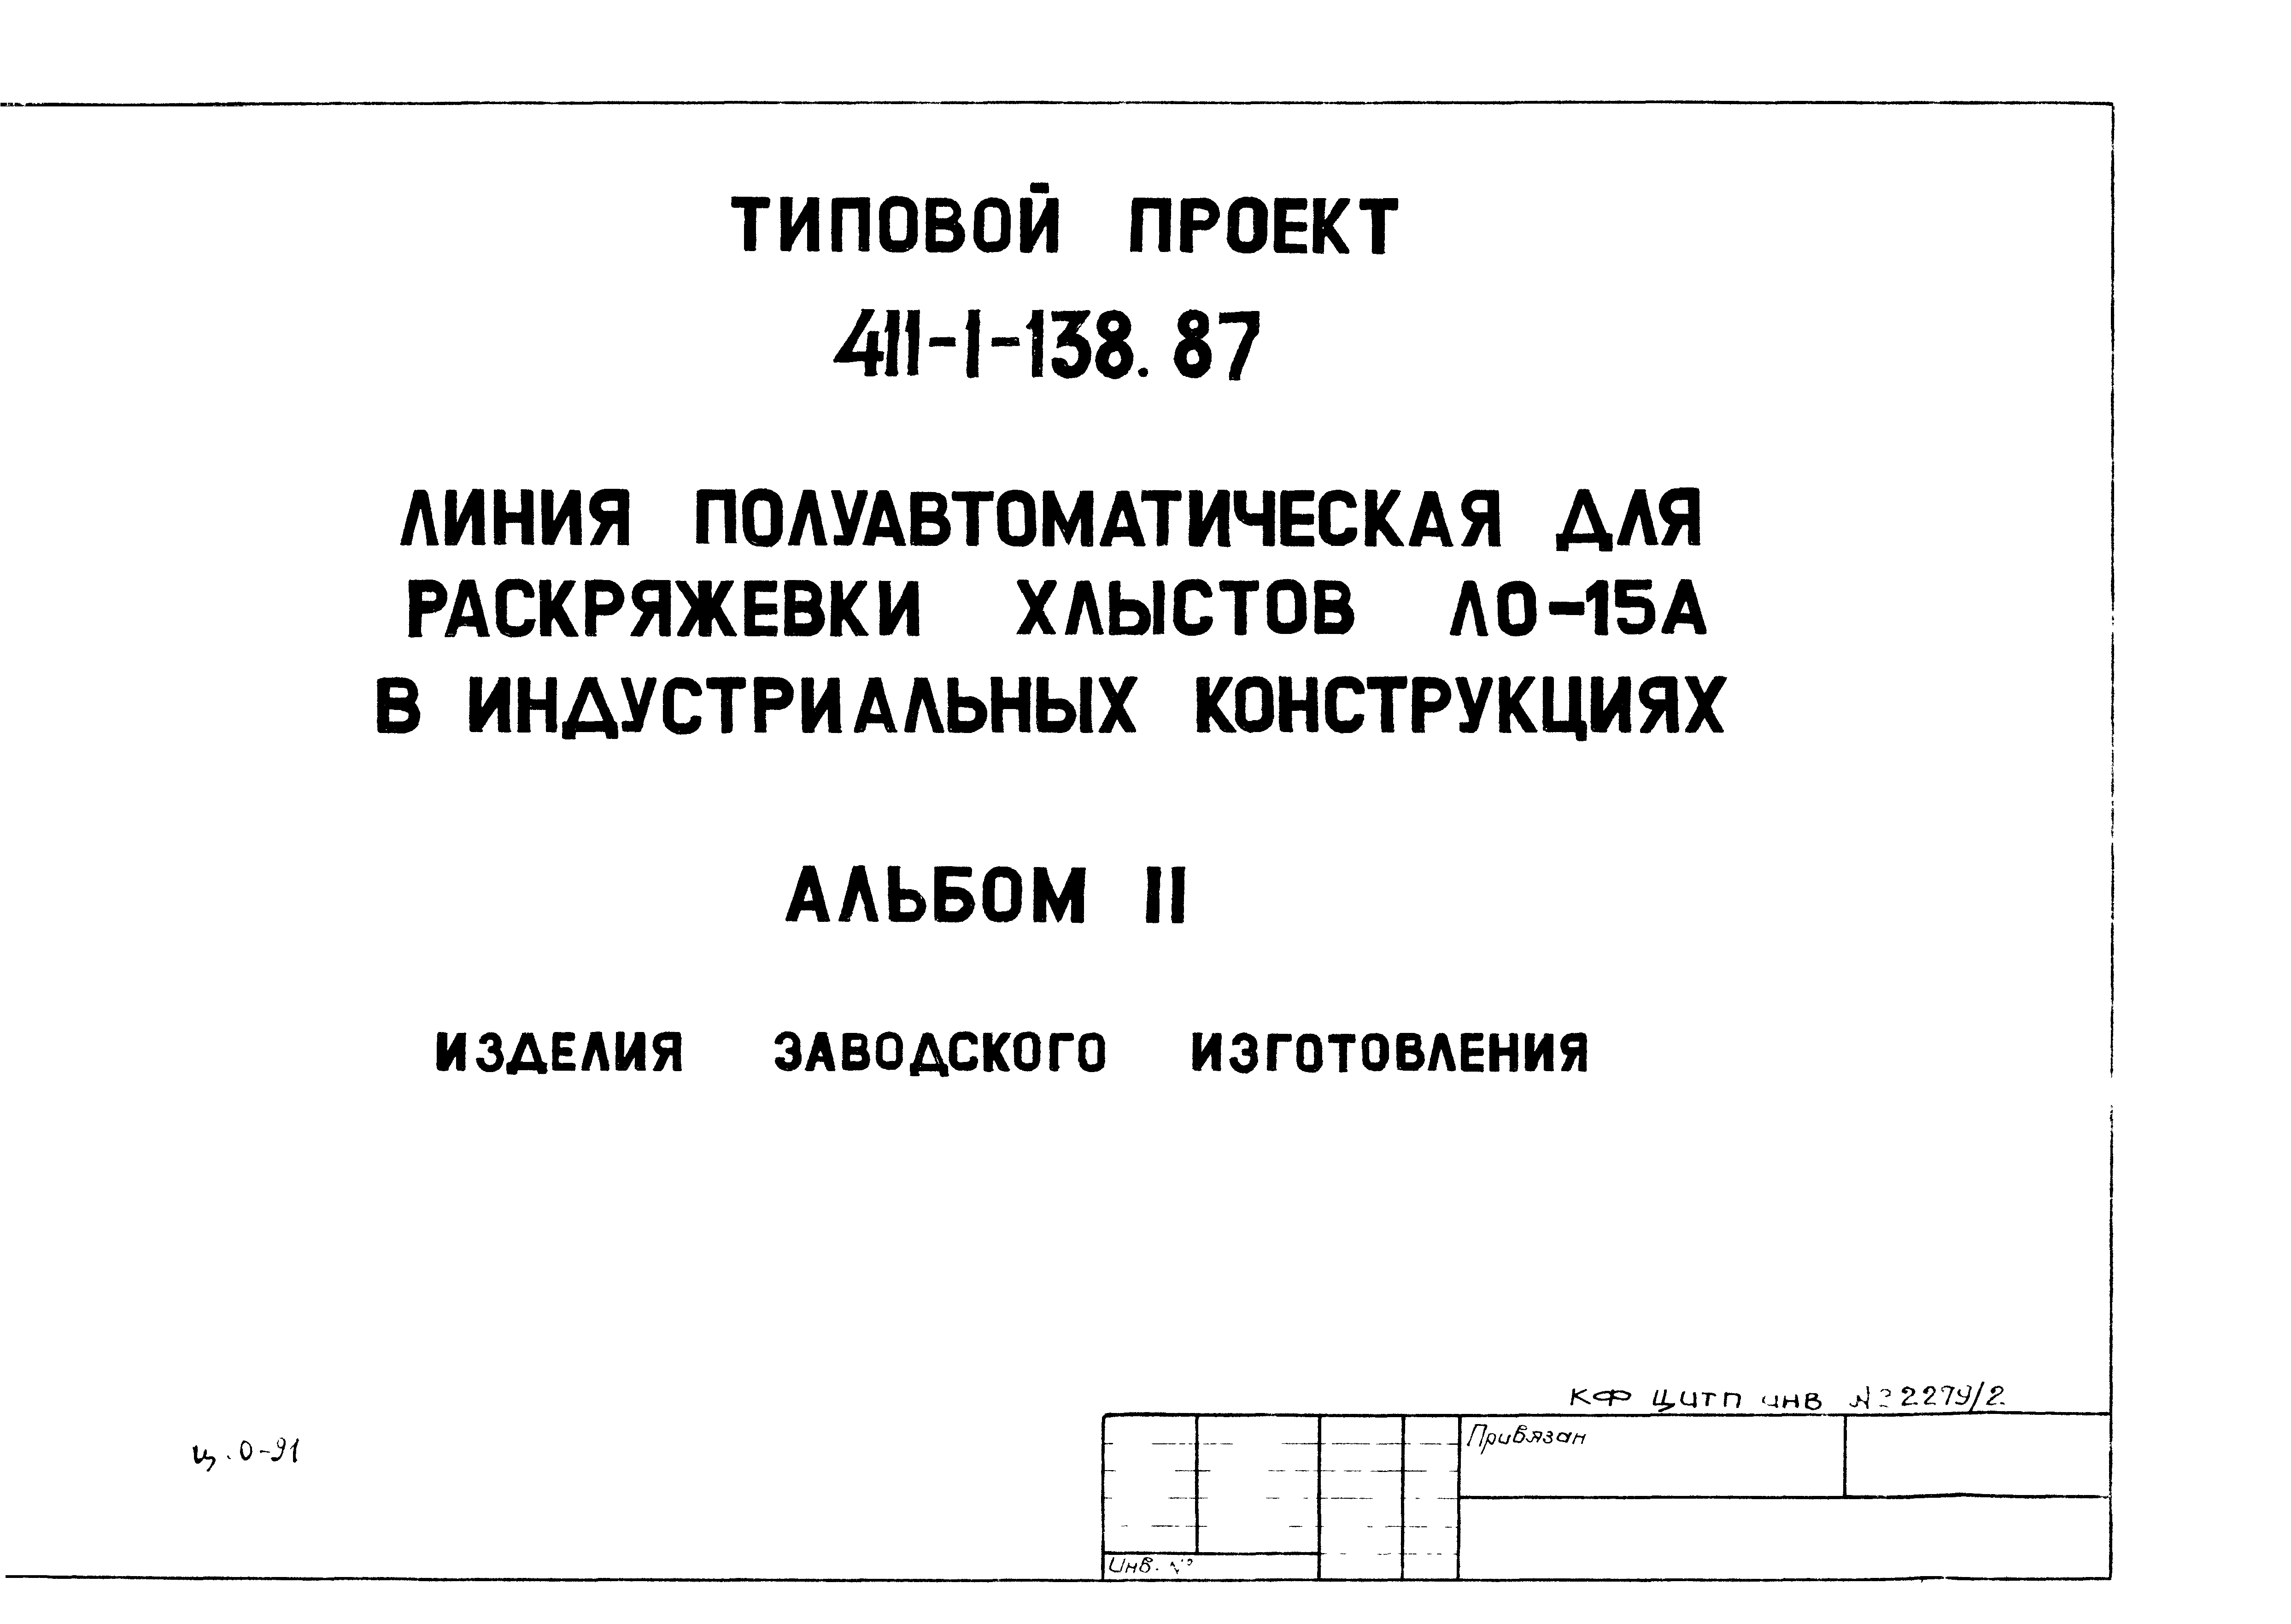 Типовой проект 411-1-138.87